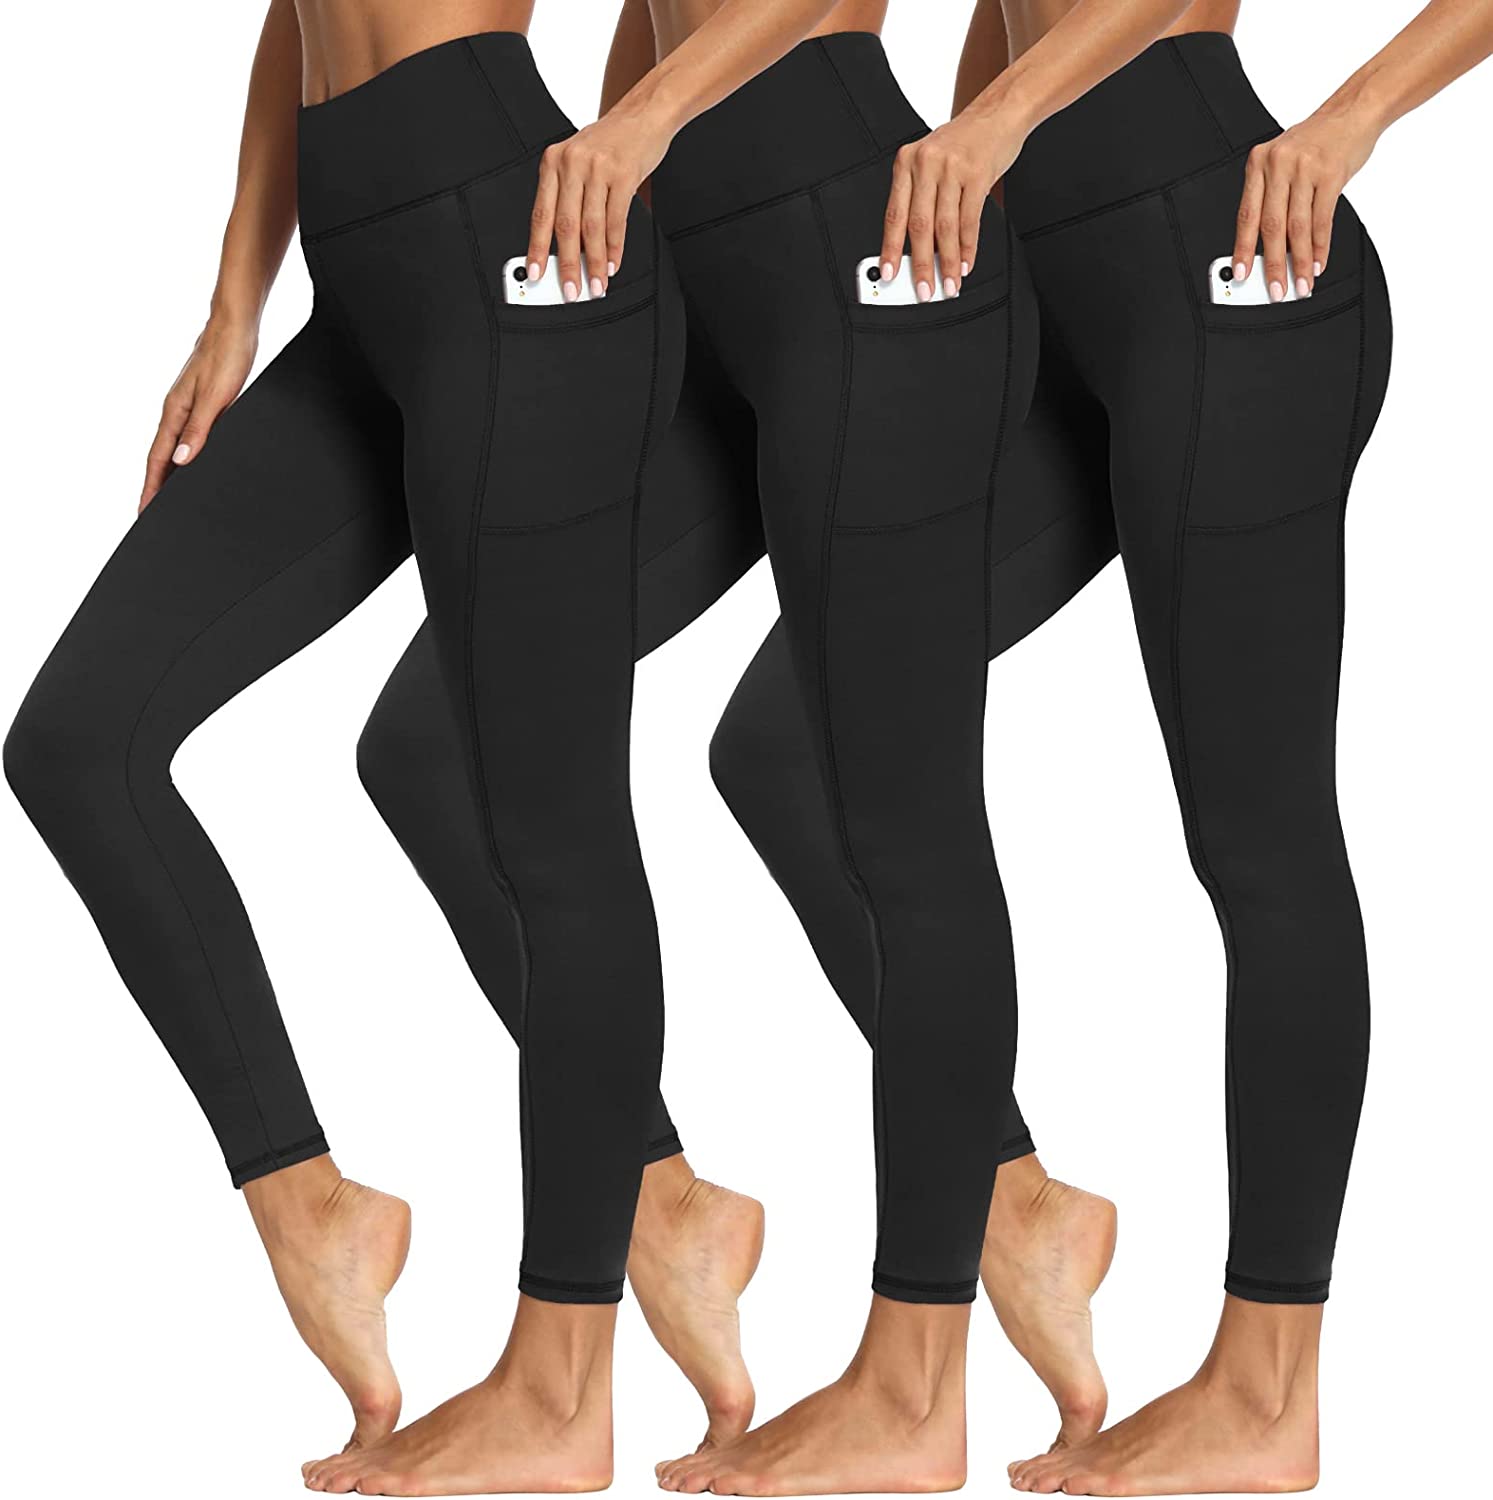 Leggings With Pockets For Women WholeSale - Price List, Bulk Buy